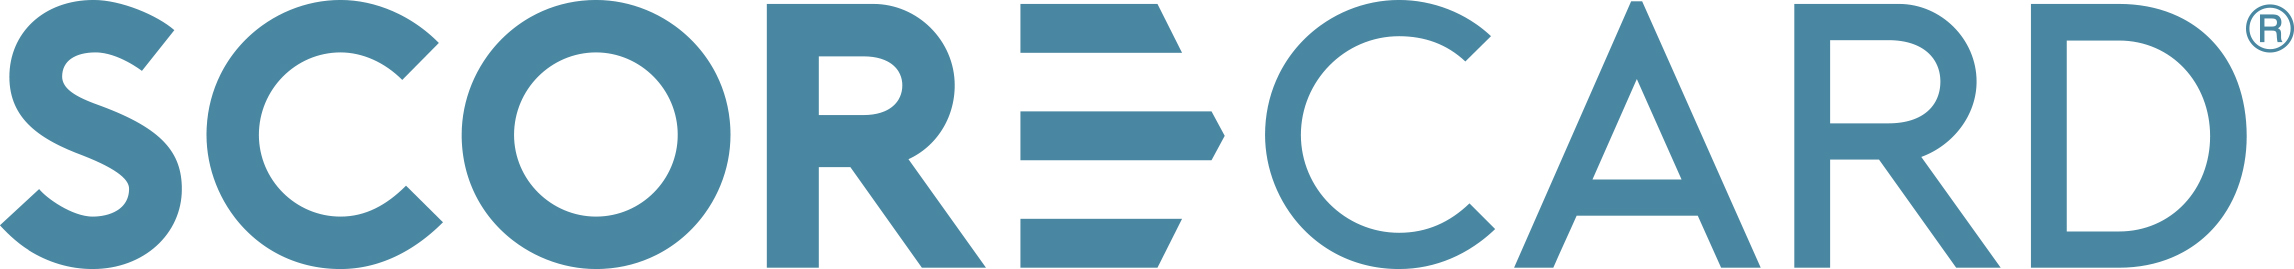 ScoreCard logo